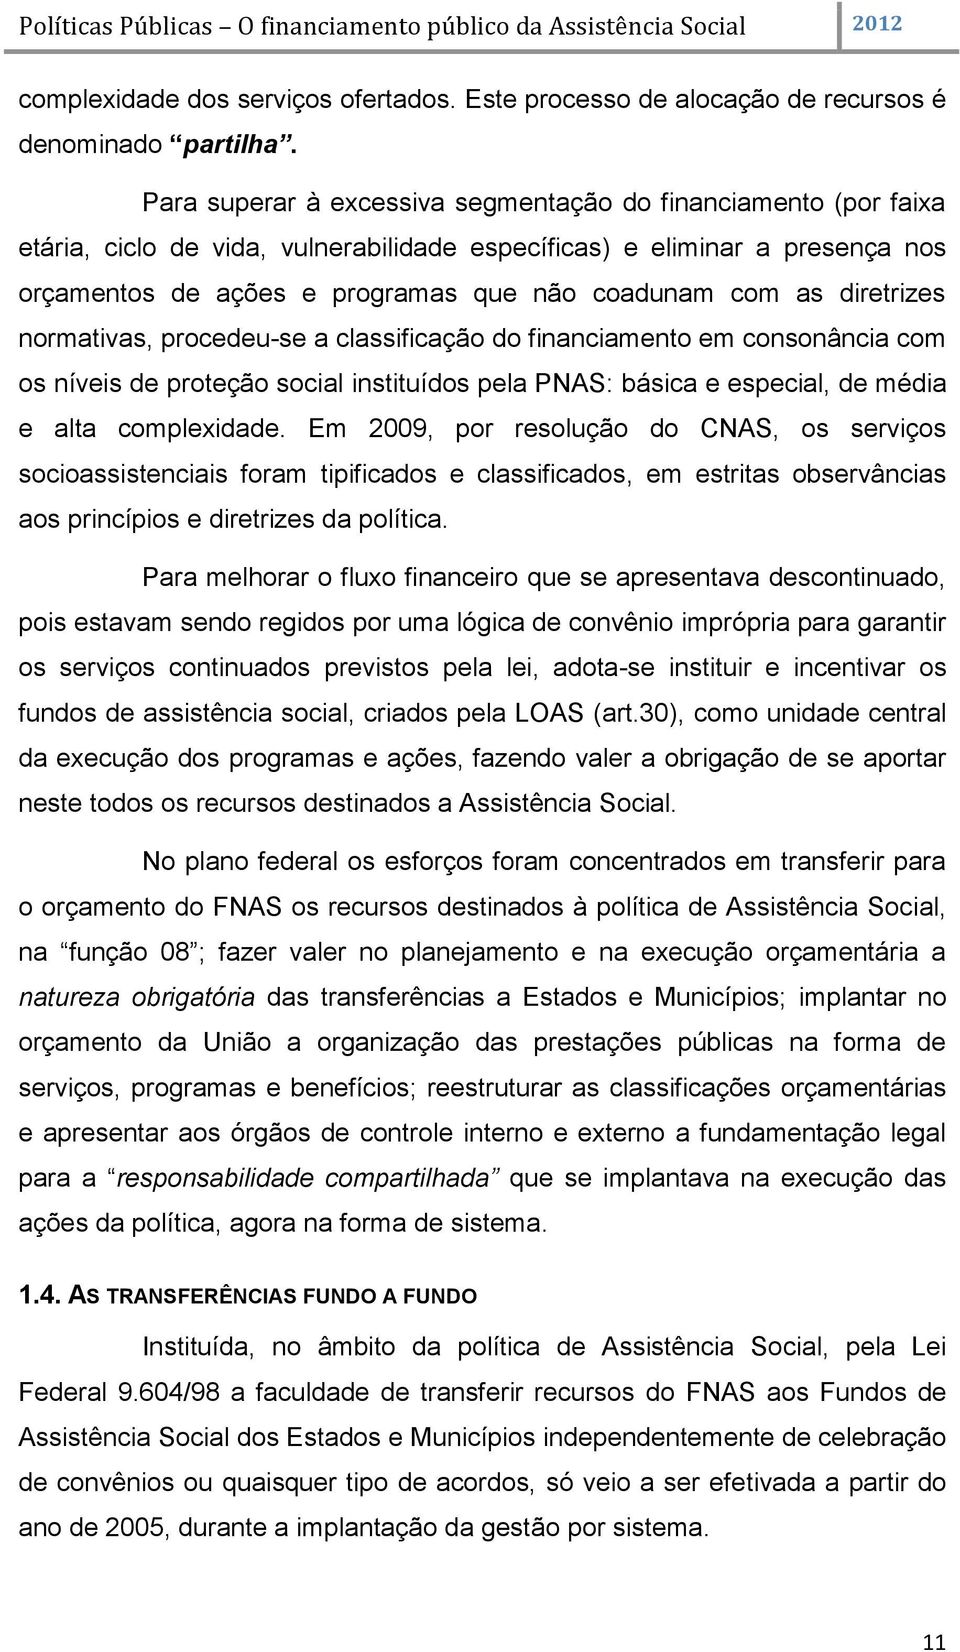 diretrizes normativas, procedeu-se a classificação do financiamento em consonância com os níveis de proteção social instituídos pela PNAS: básica e especial, de média e alta complexidade.